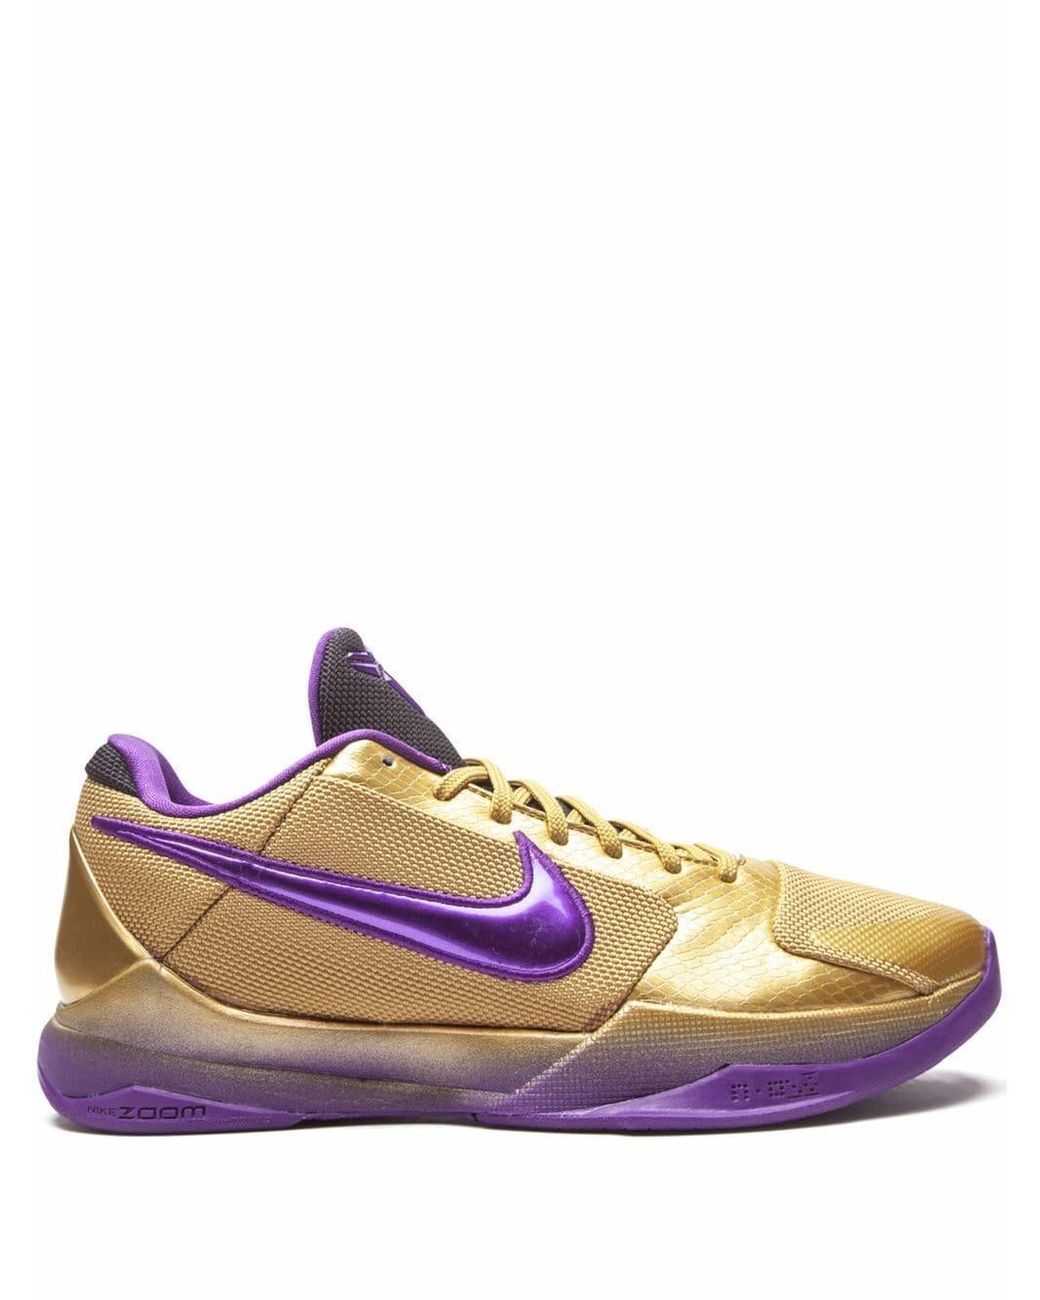 Nike Kobe 5 Protro DeMar DeRozan Sneakers - Farfetch